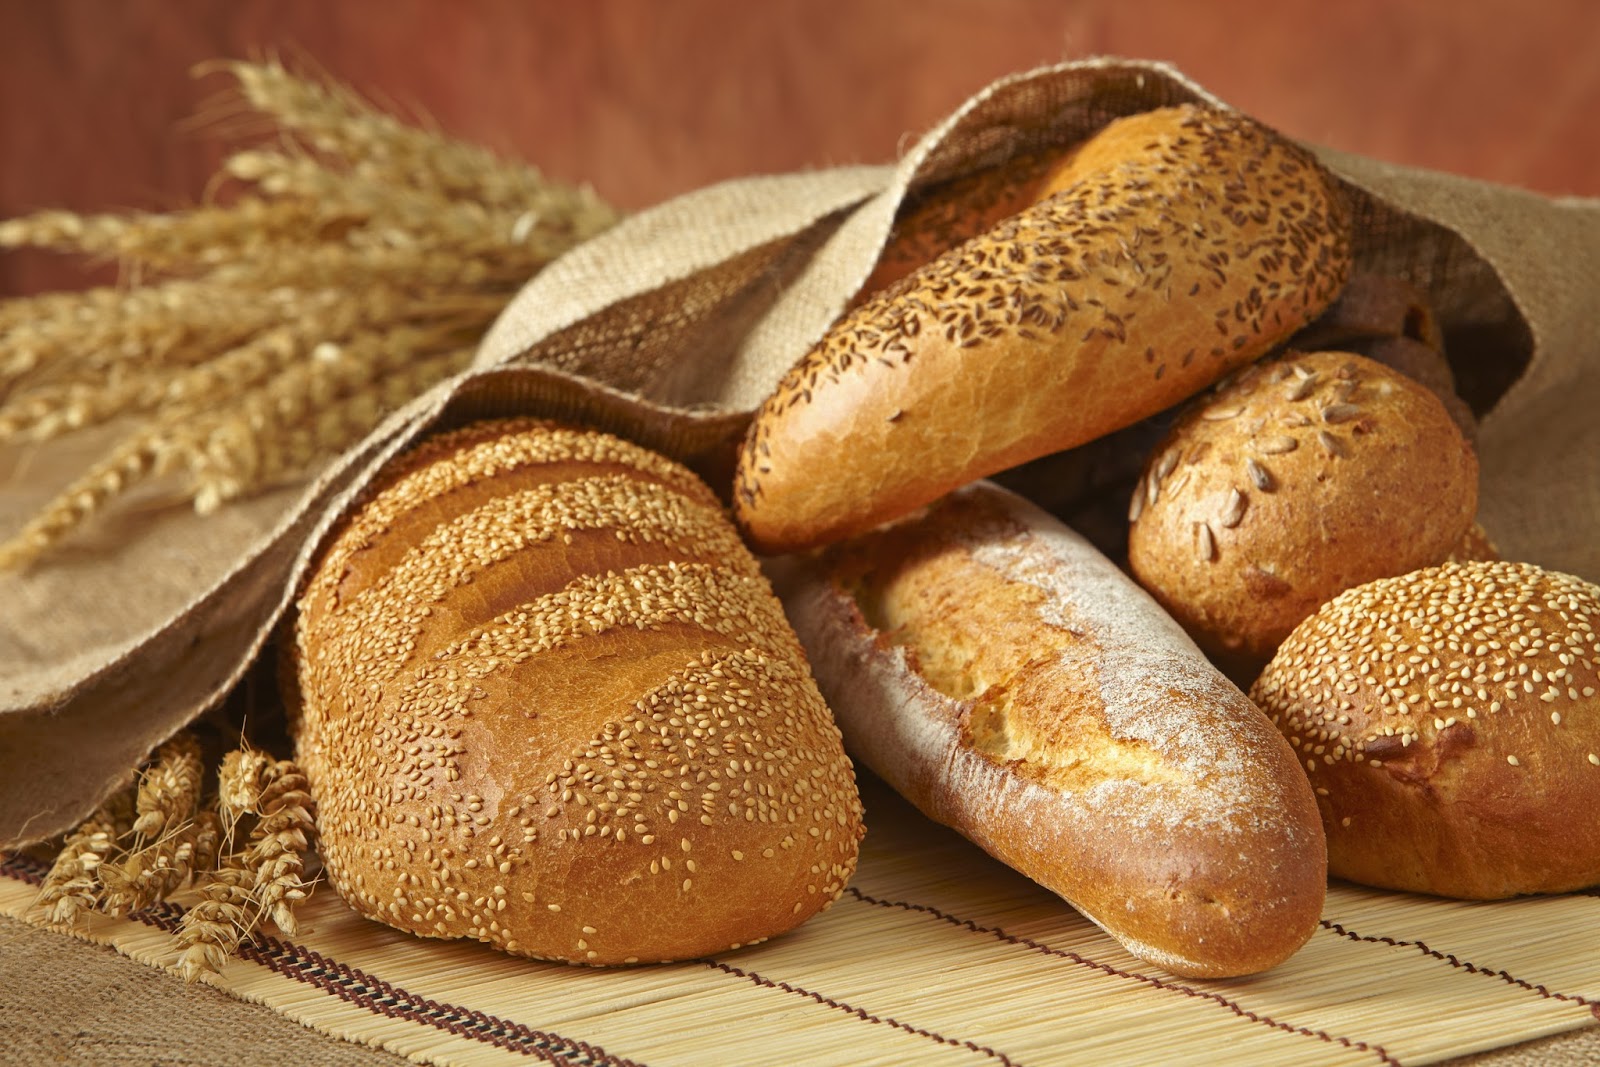 सपने में रोटी खरीदने का क्या मतलब है?